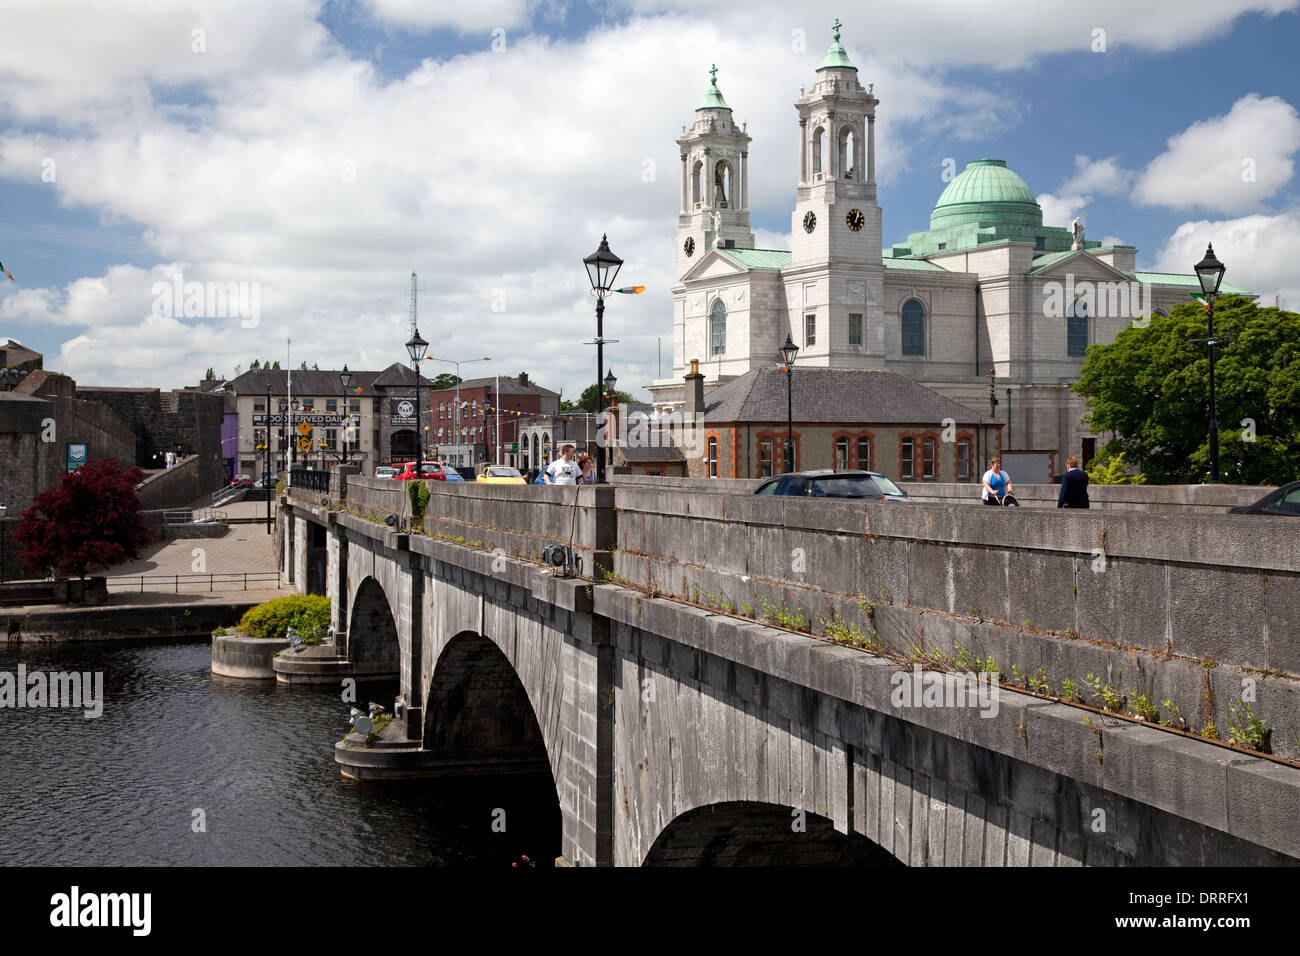 Puente que cruza el río Shannon y la iglesia de San Pedro y san Pablo, Athlone, Irlanda Foto de stock